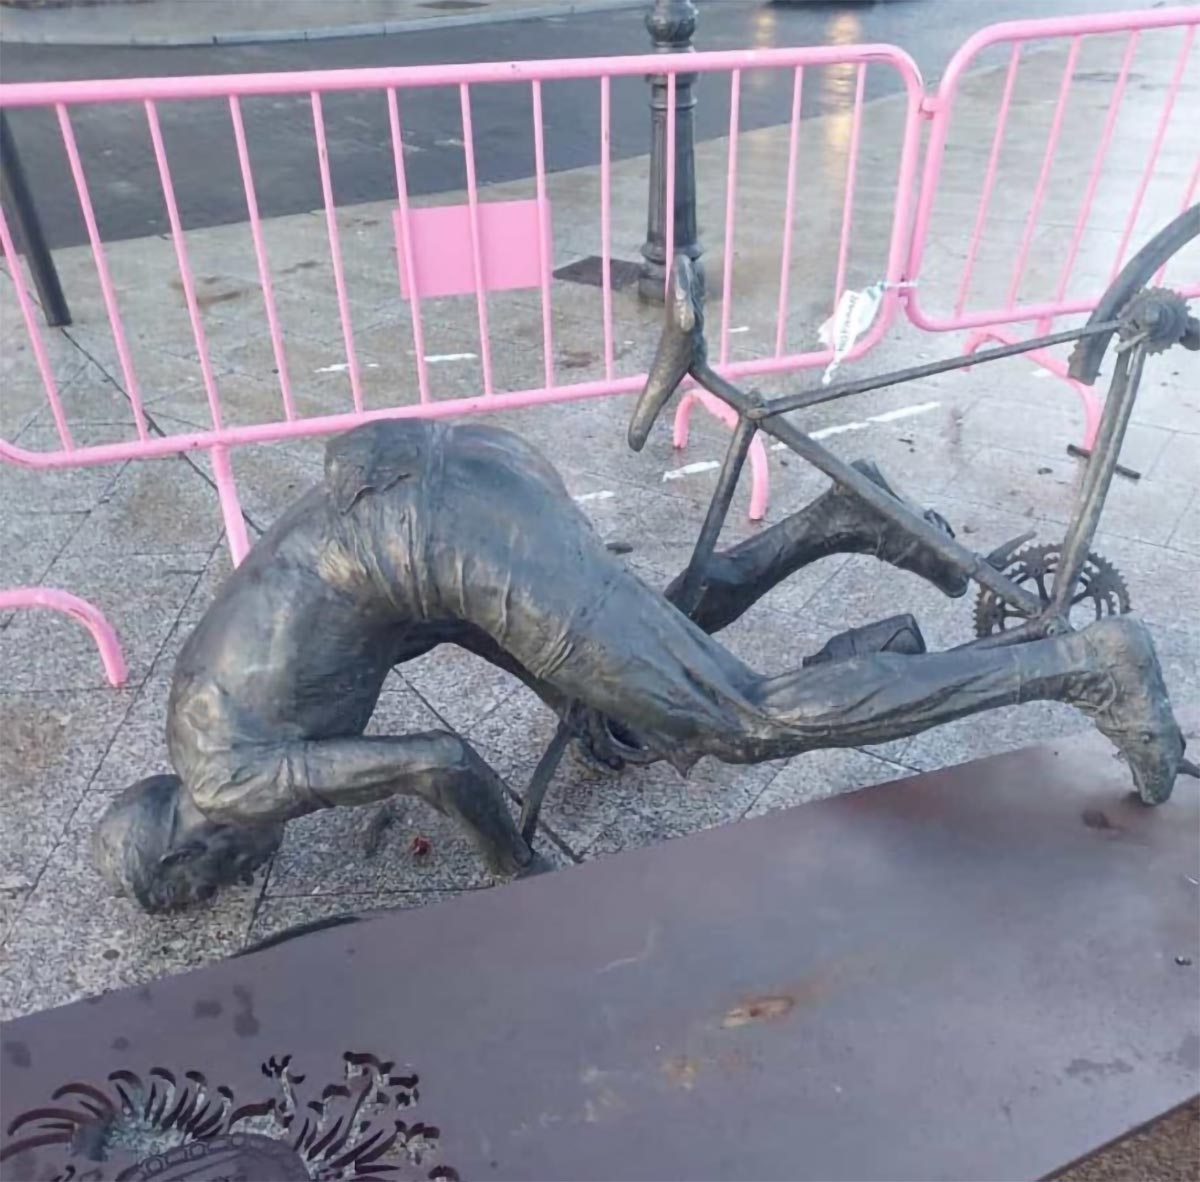 La estatua dedicada a Bahamontes en Toledo, derribada en un acto vandálico